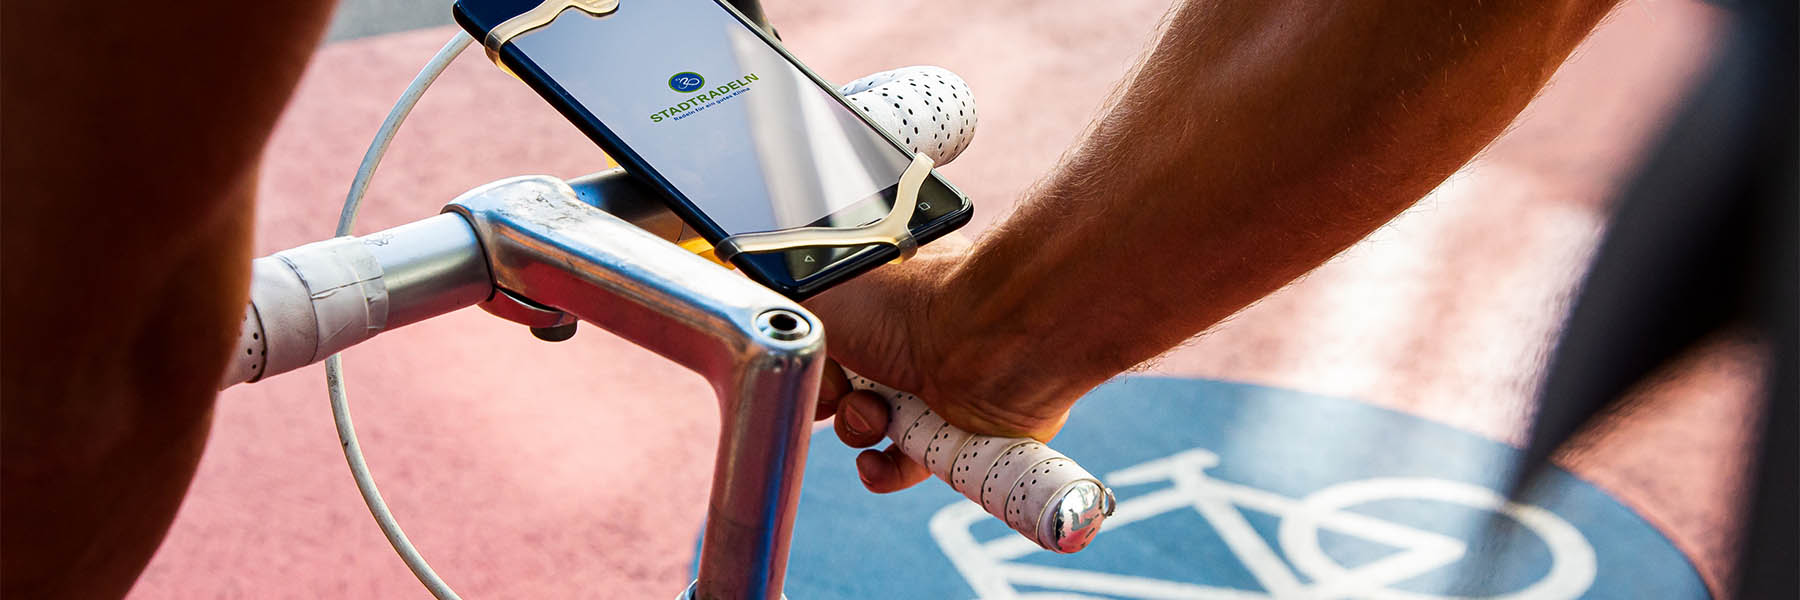 Fahrrad mit Stadtradeln-App